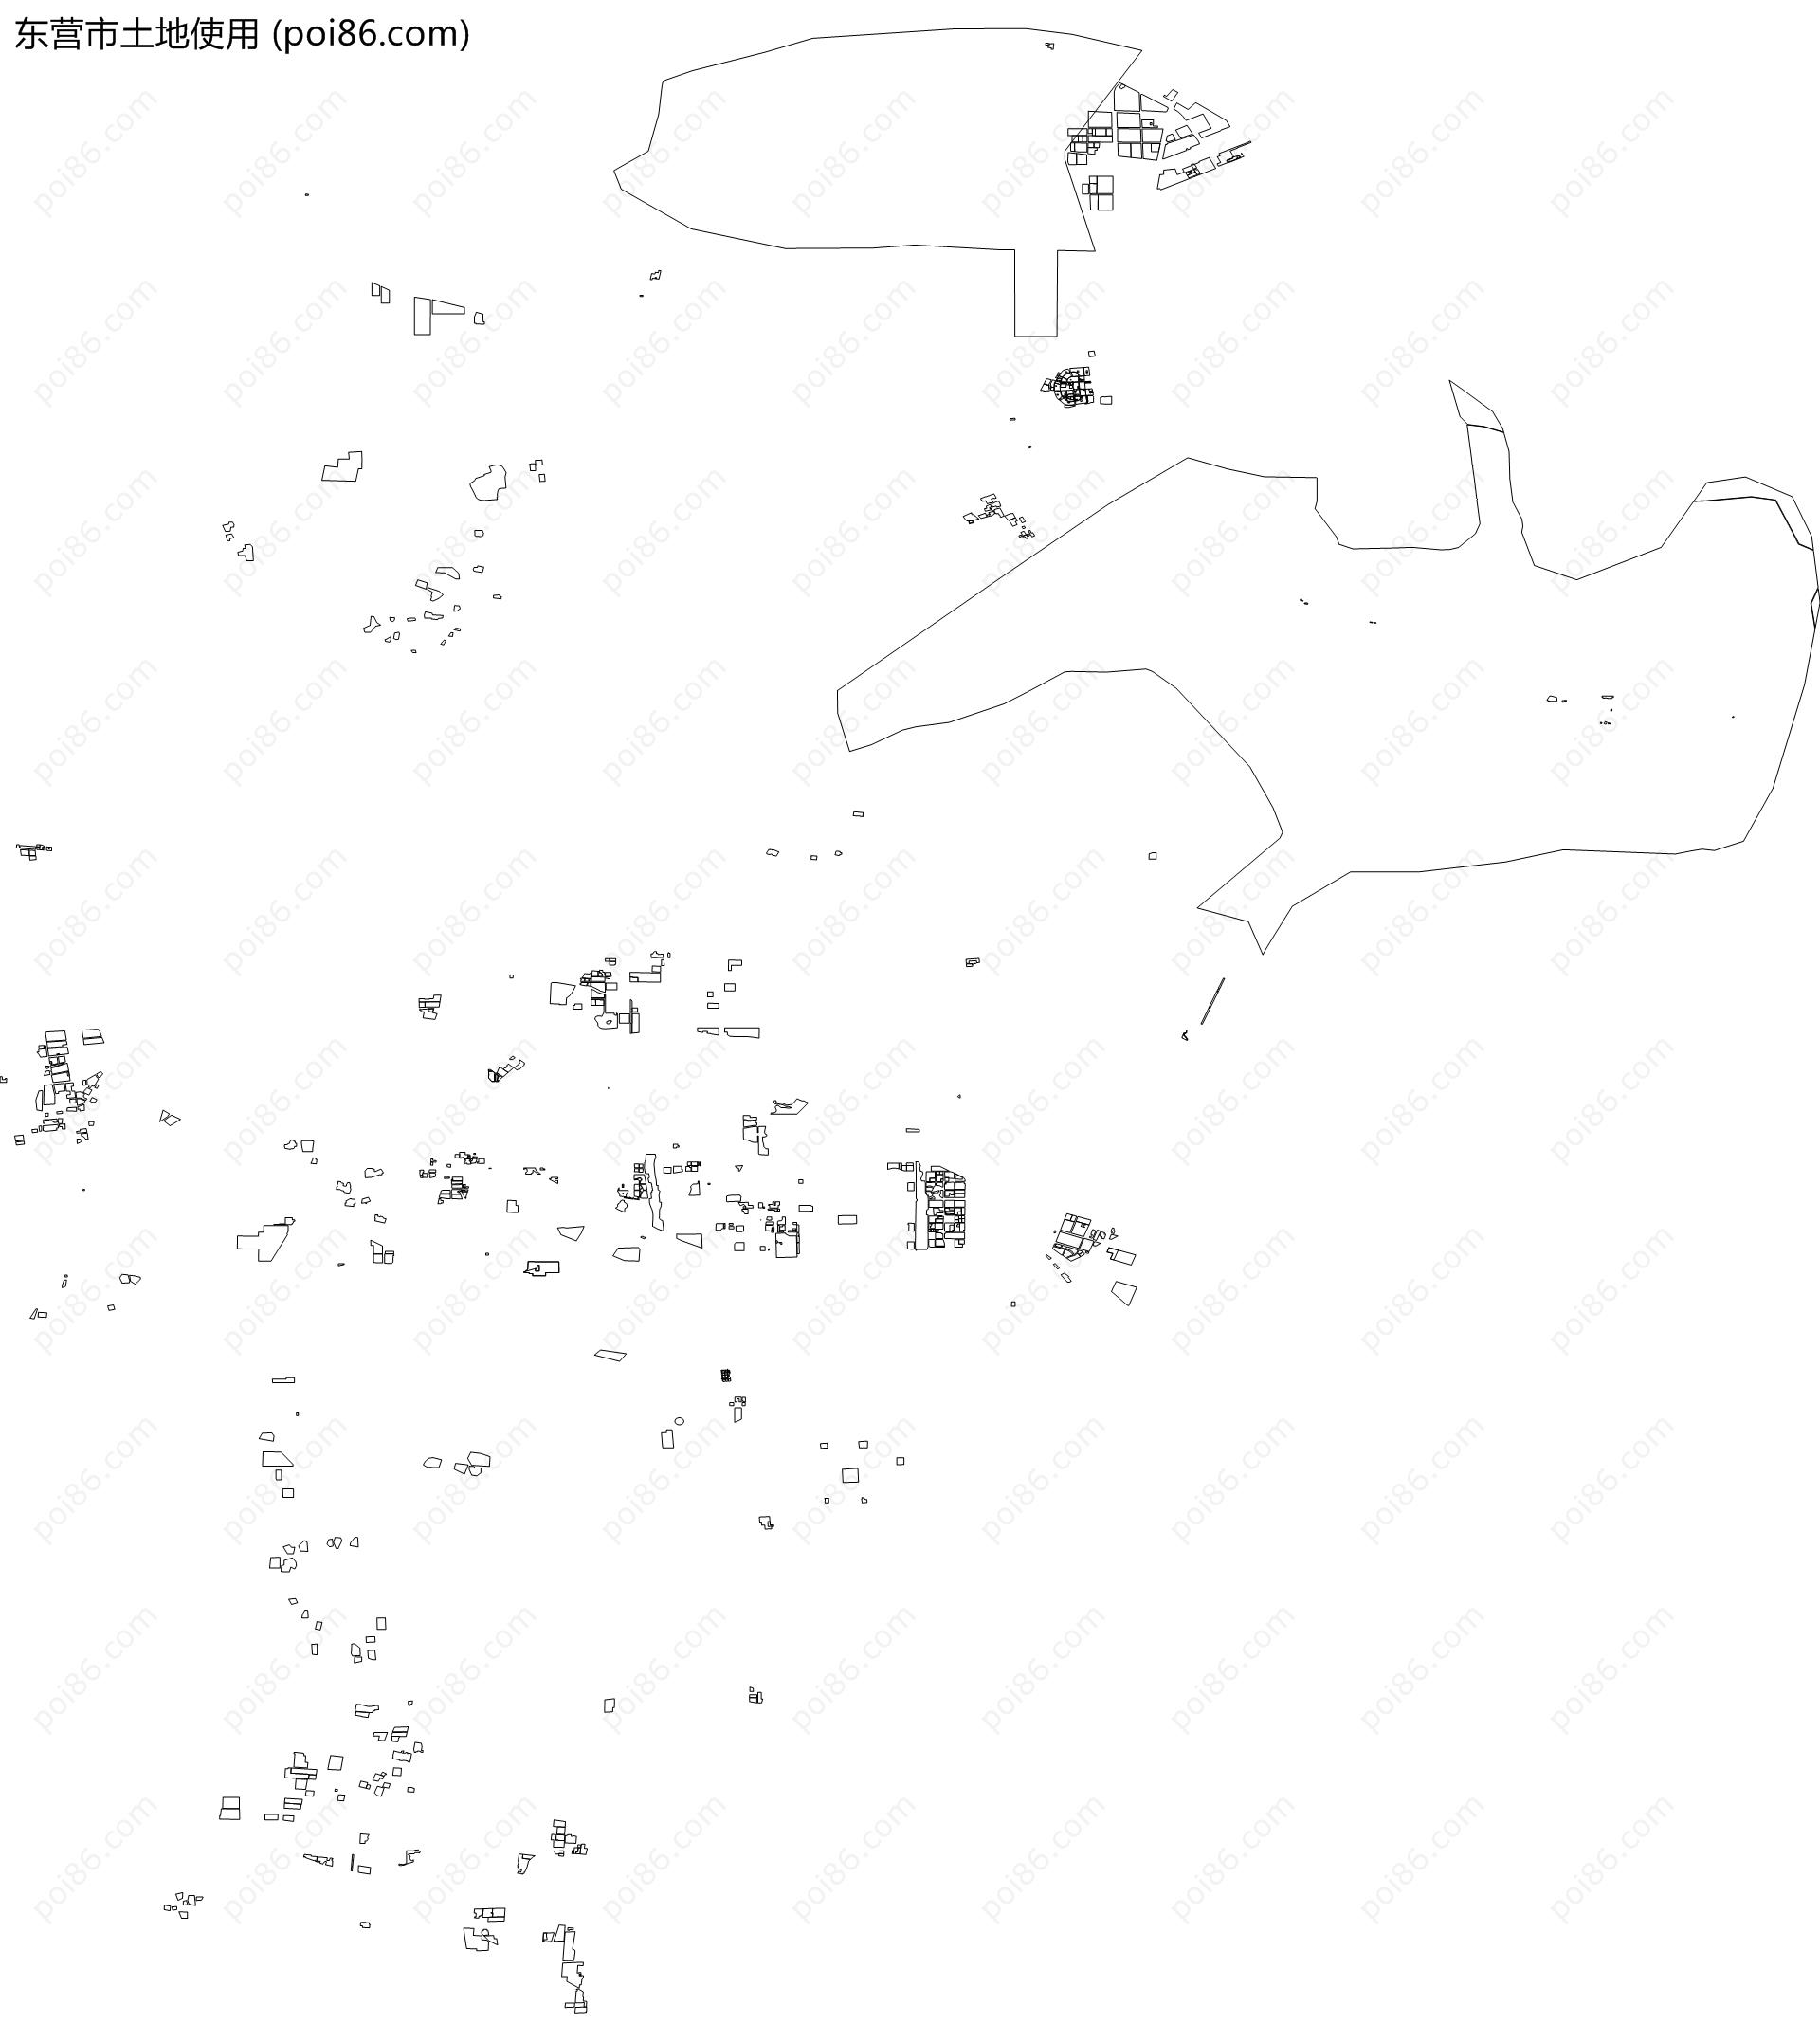 东营市土地使用地图